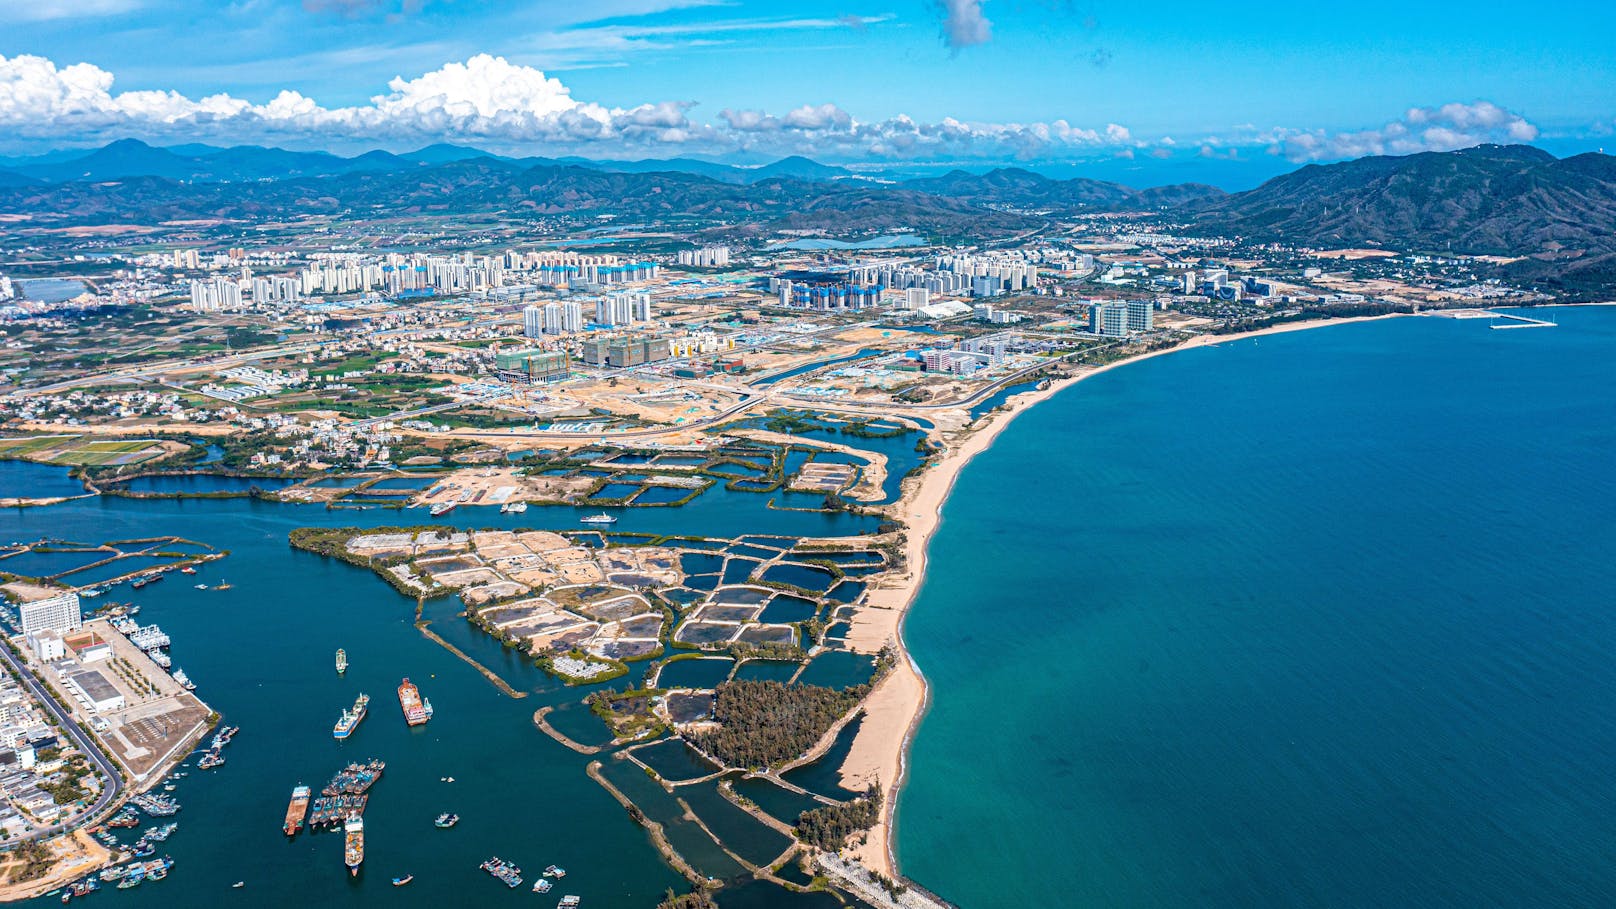 Das Urlaubsparadies Sanya auf der Insel Hainan ist auch als "Chinas Hawaii" bekannt.